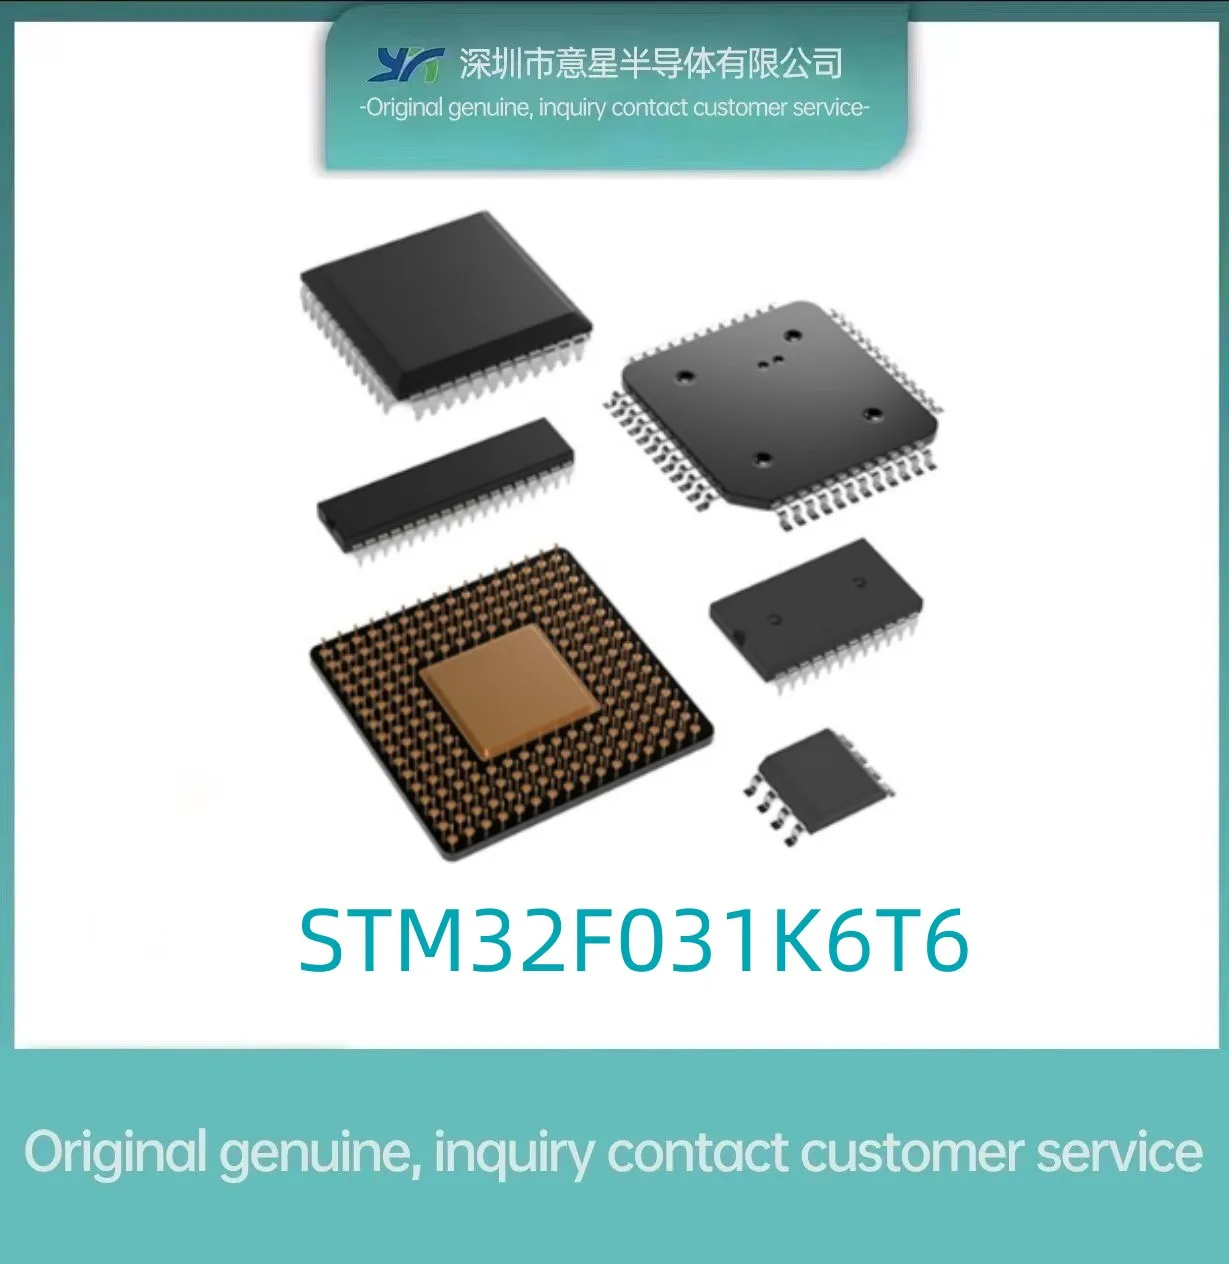 STM32F031K6T6 Pachet QFP32 stoc loc 031K6T6 microcontroler original autentic - 0